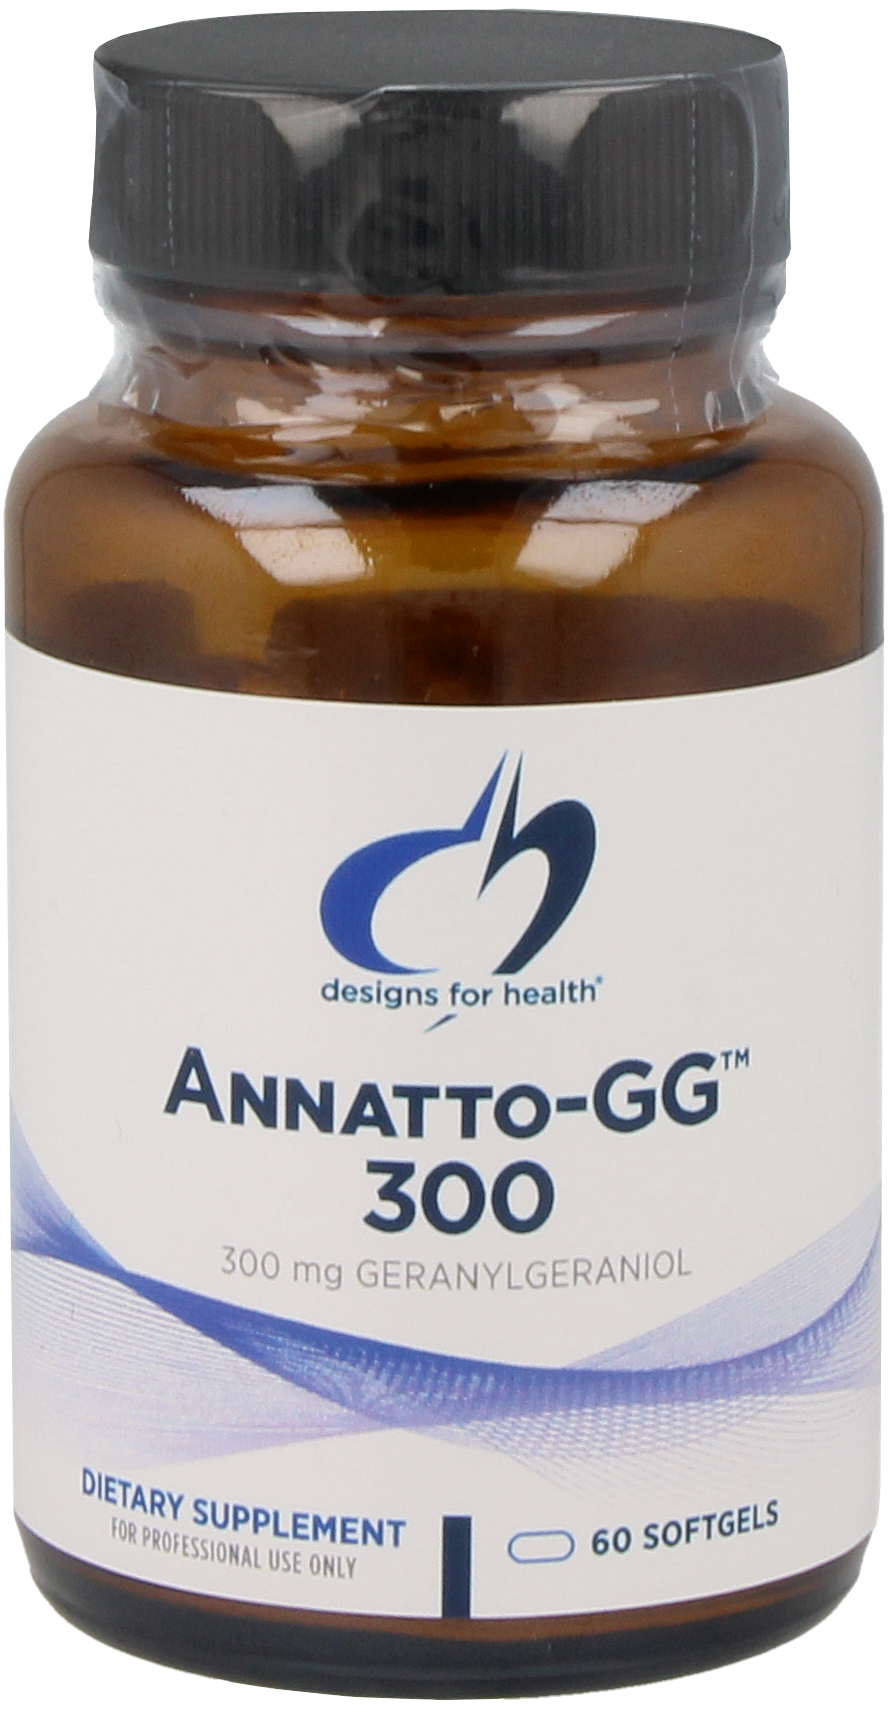 Annatto-GG™ 300 